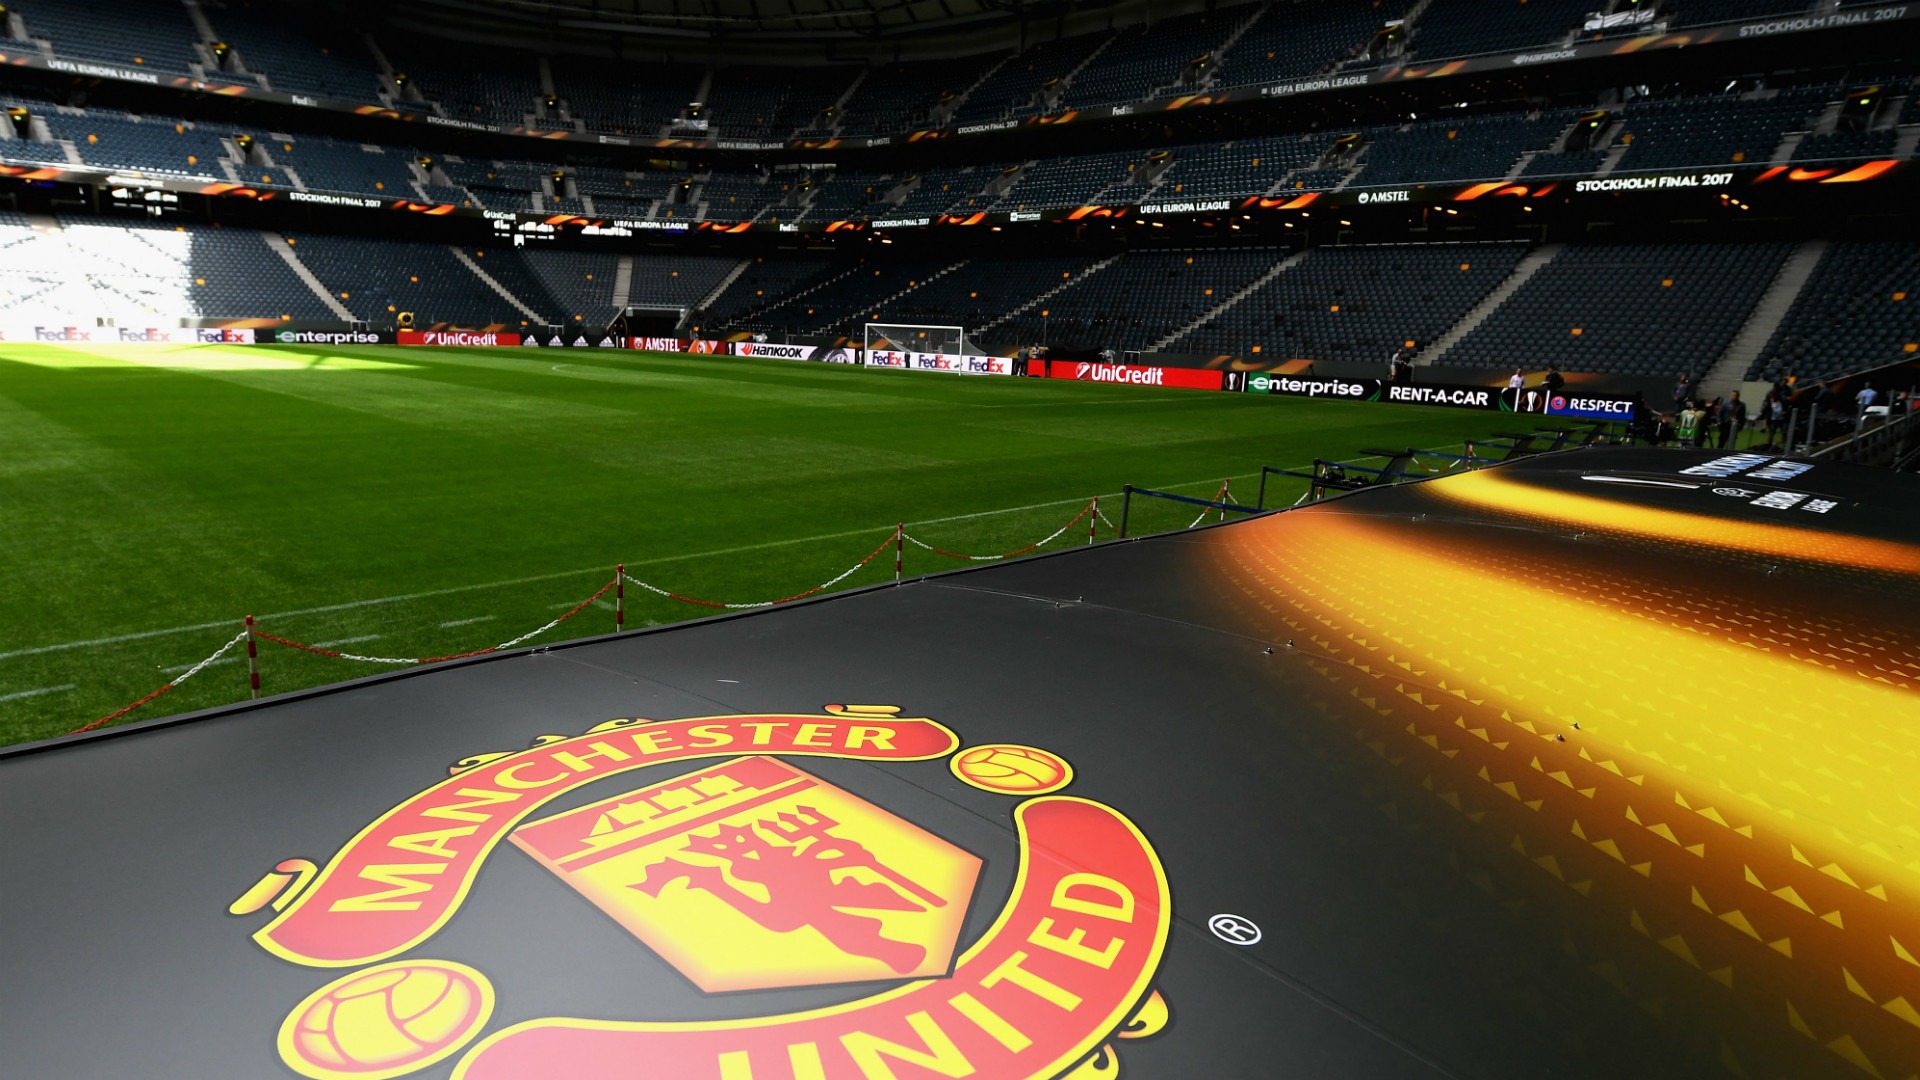 Download hình nền Hình nền CLB Manchester United Full HD không che mới nhất  2015  VFOVN